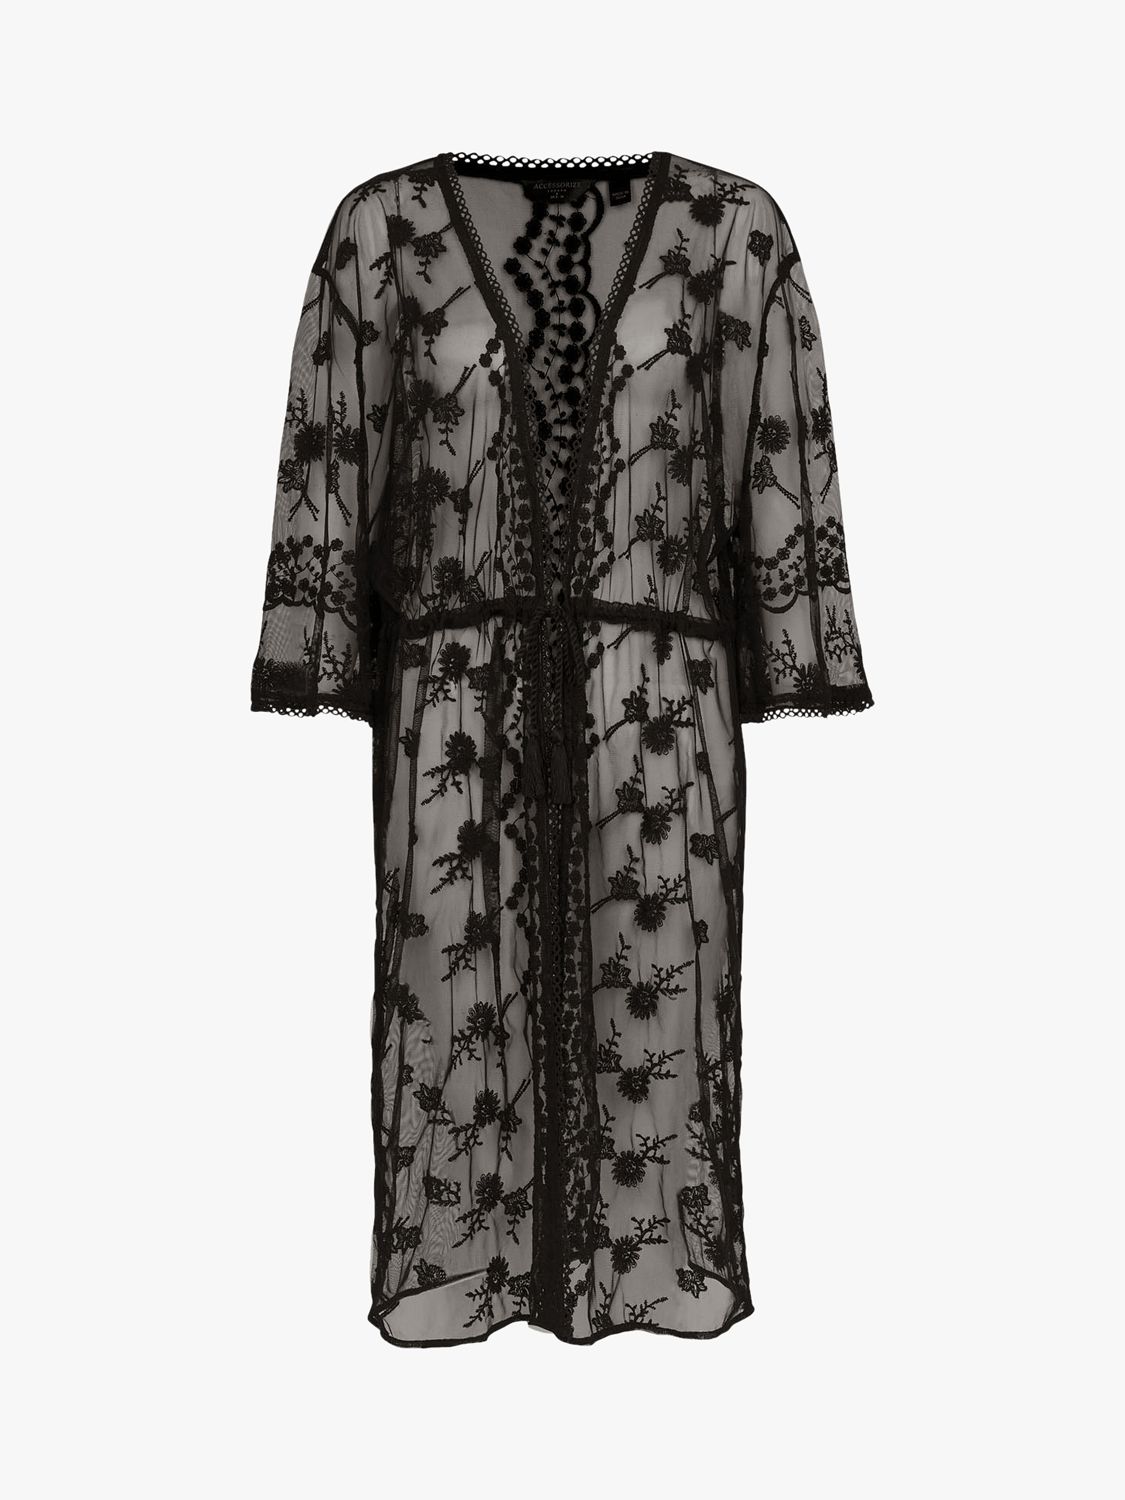 Accessorize Lace Kimono, Black, XXL